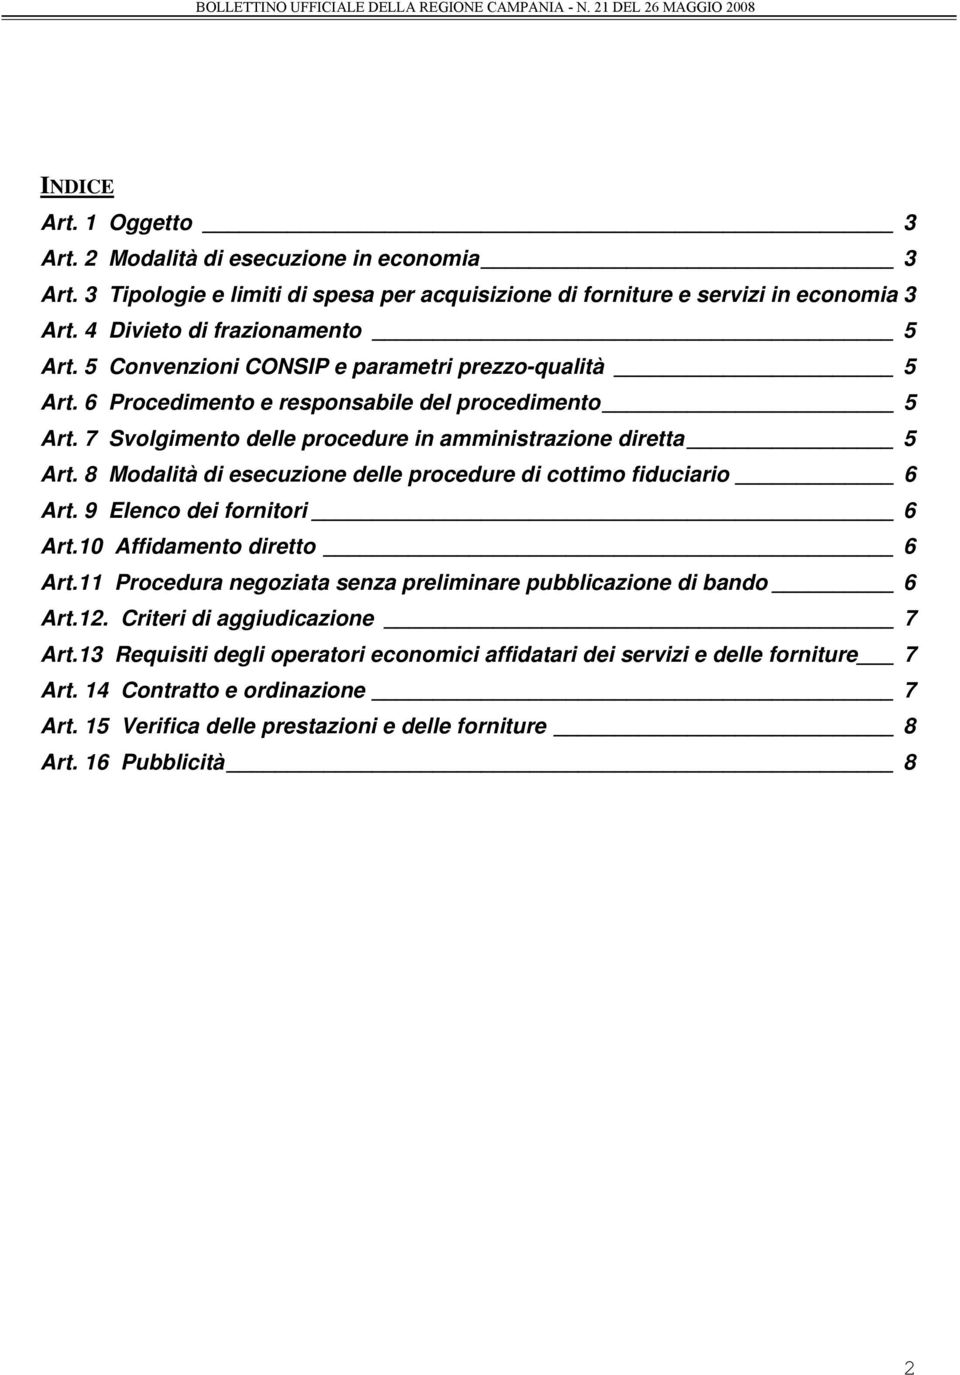 8 Modalità di esecuzione delle procedure di cottimo fiduciario 6 Art. 9 Elenco dei fornitori 6 Art.10 Affidamento diretto 6 Art.11 Procedura negoziata senza preliminare pubblicazione di bando 6 Art.